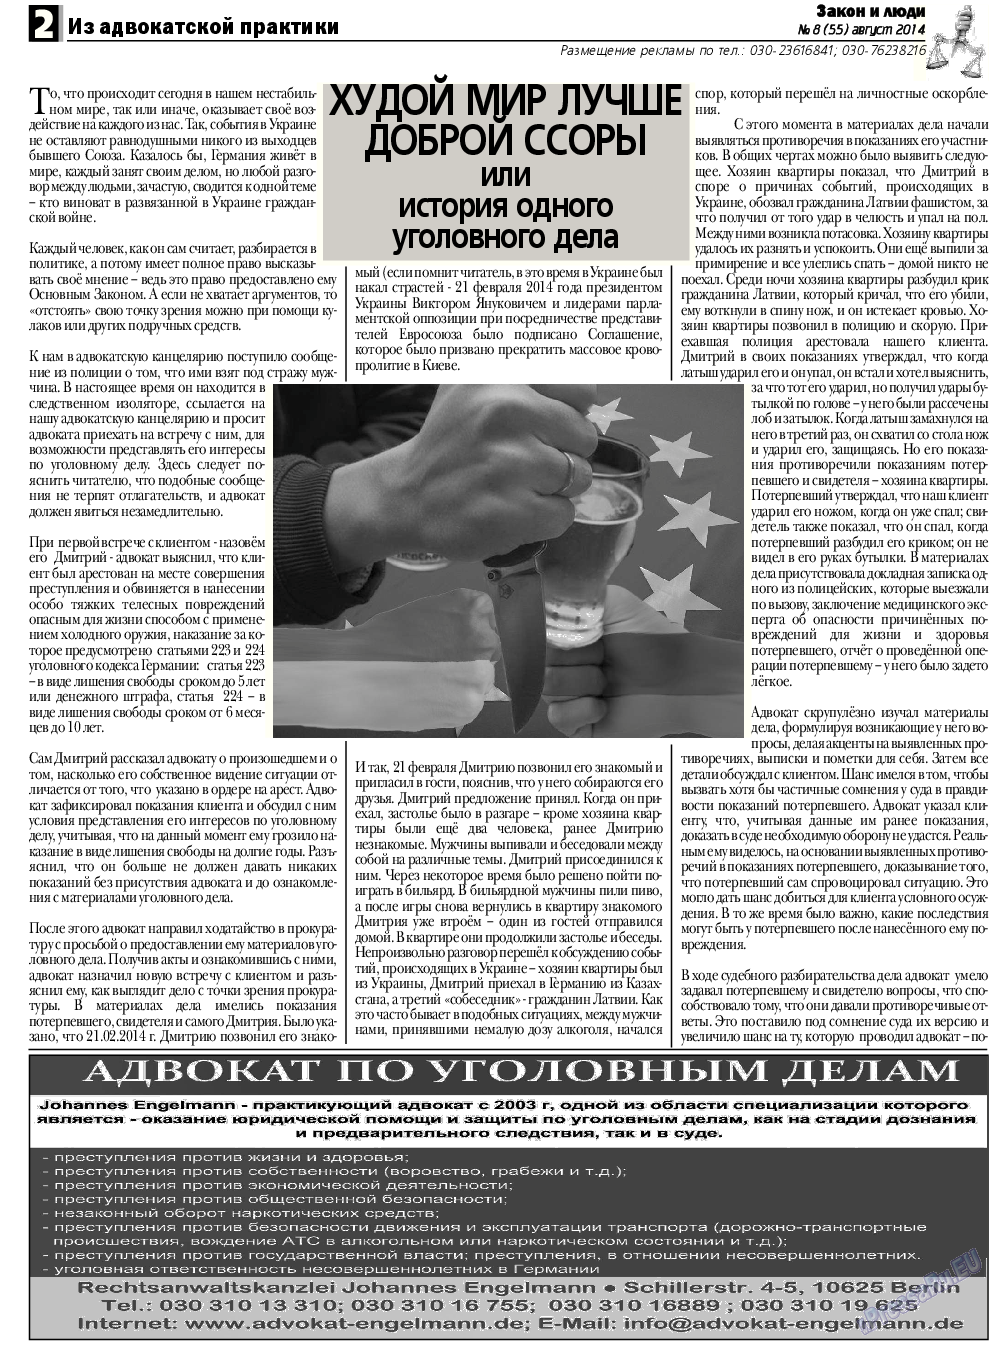 Закон и люди, газета. 2014 №8 стр.2